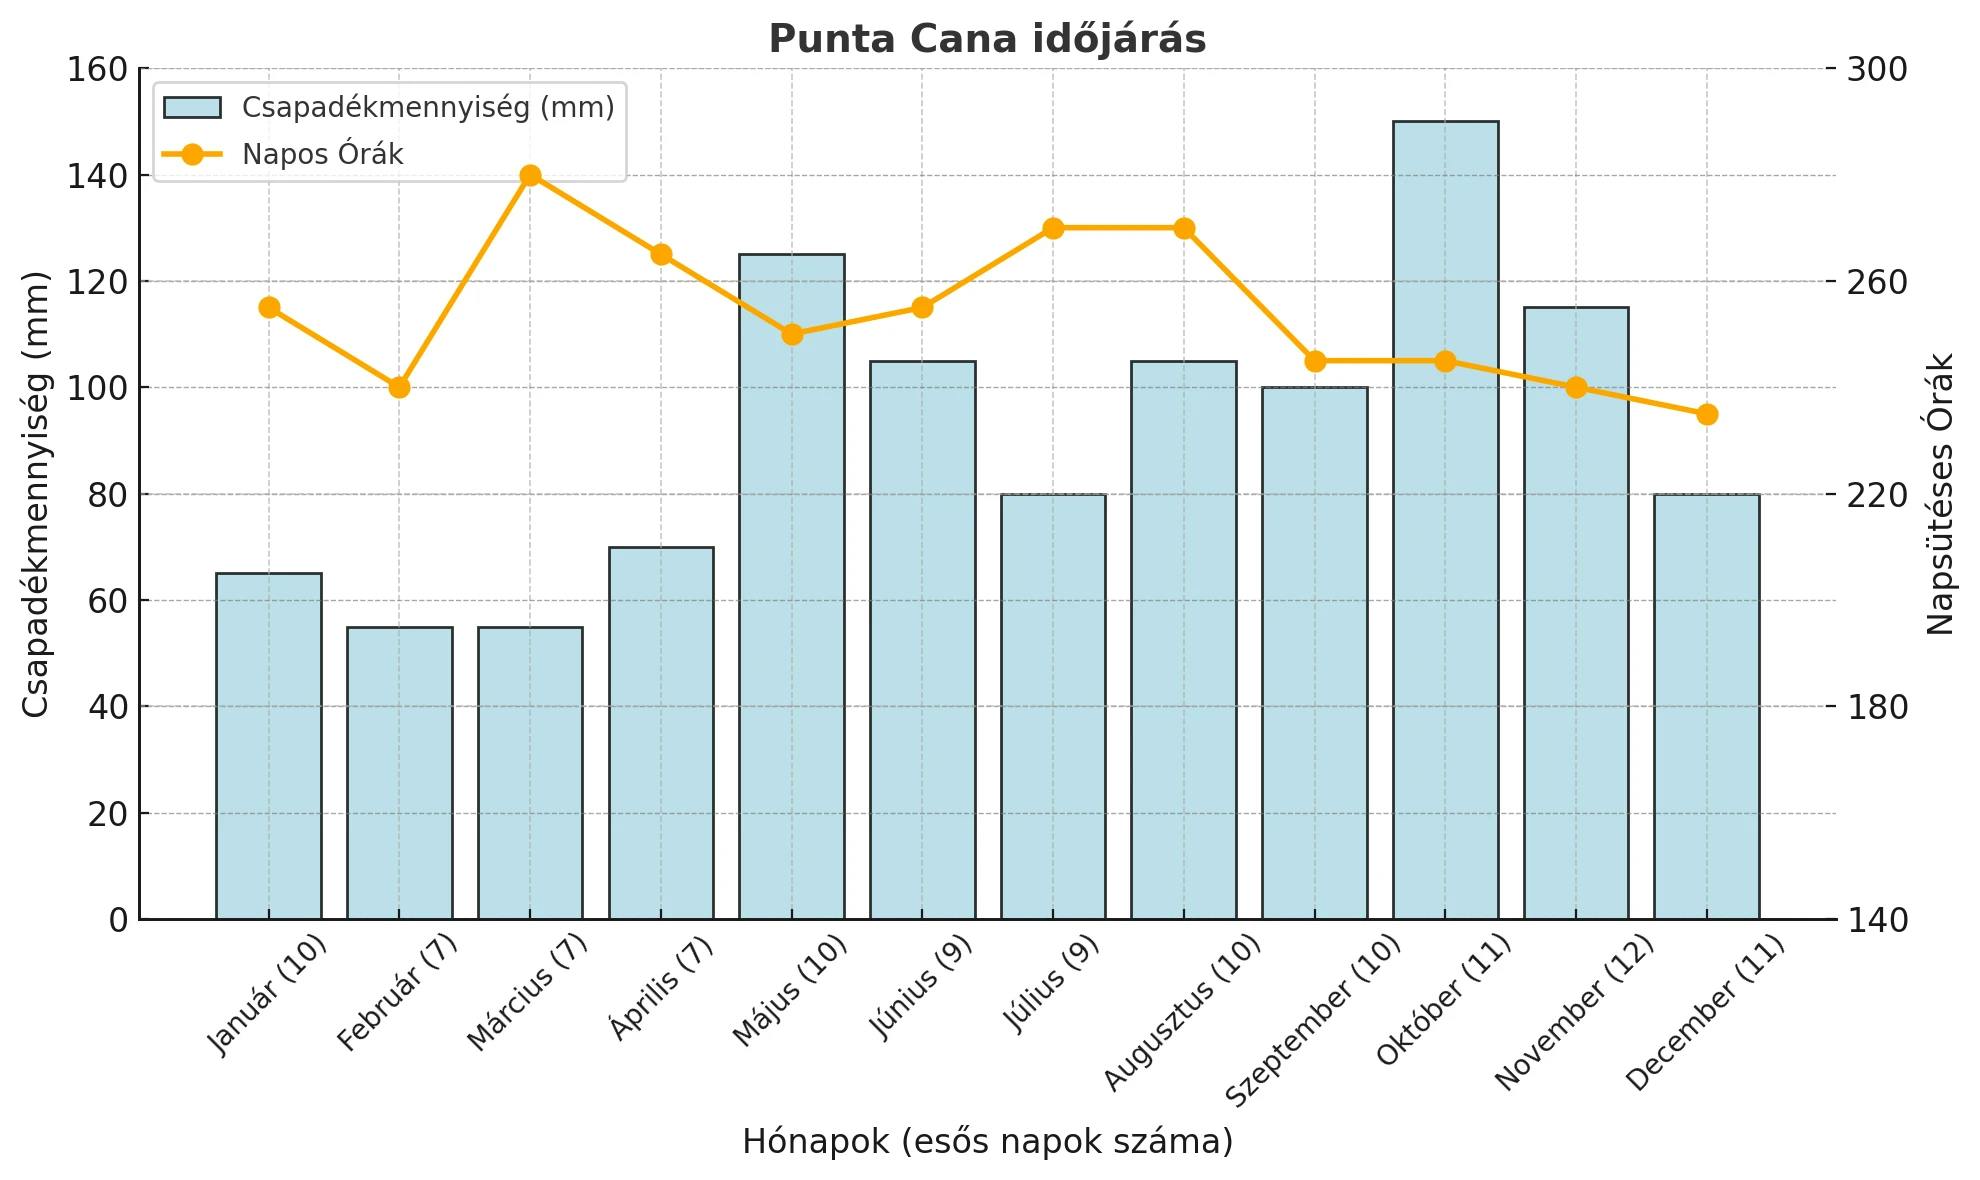 dominika punta cana időjárás grafikon